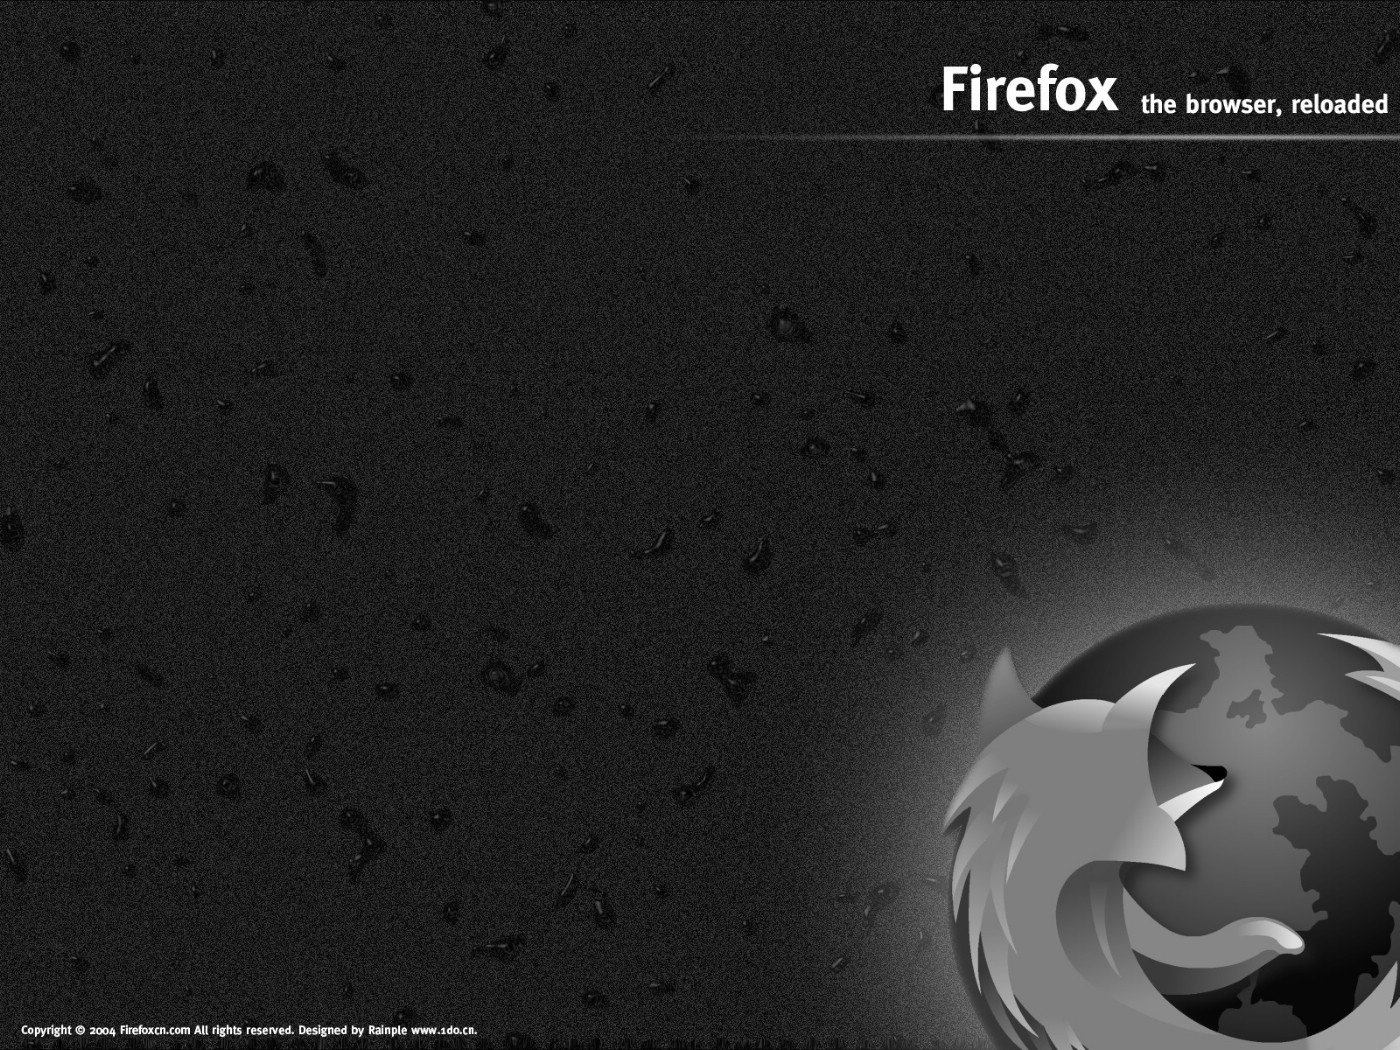 壁纸1400x1050Firefox桌面壁纸 壁纸19壁纸 Firefox桌面壁纸壁纸 Firefox桌面壁纸图片 Firefox桌面壁纸素材 系统壁纸 系统图库 系统图片素材桌面壁纸